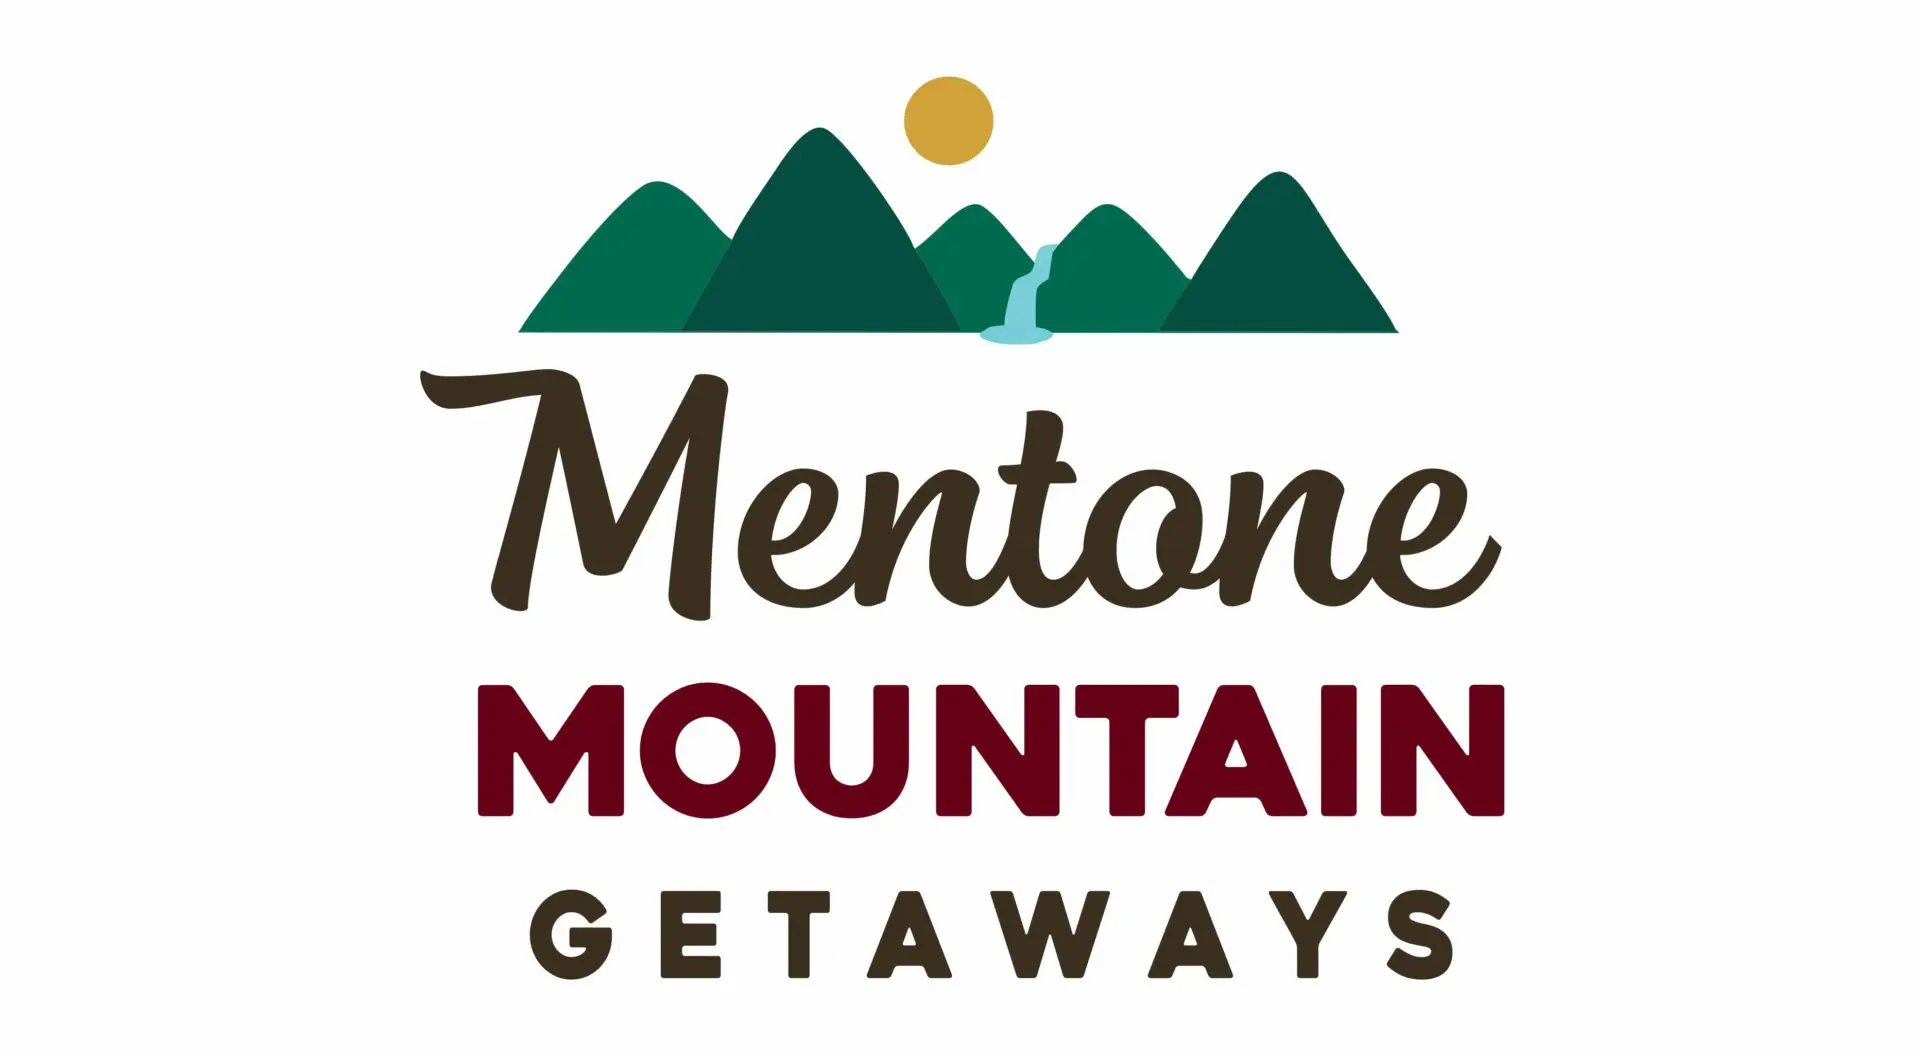 A logo for the mentone mountain getaways.